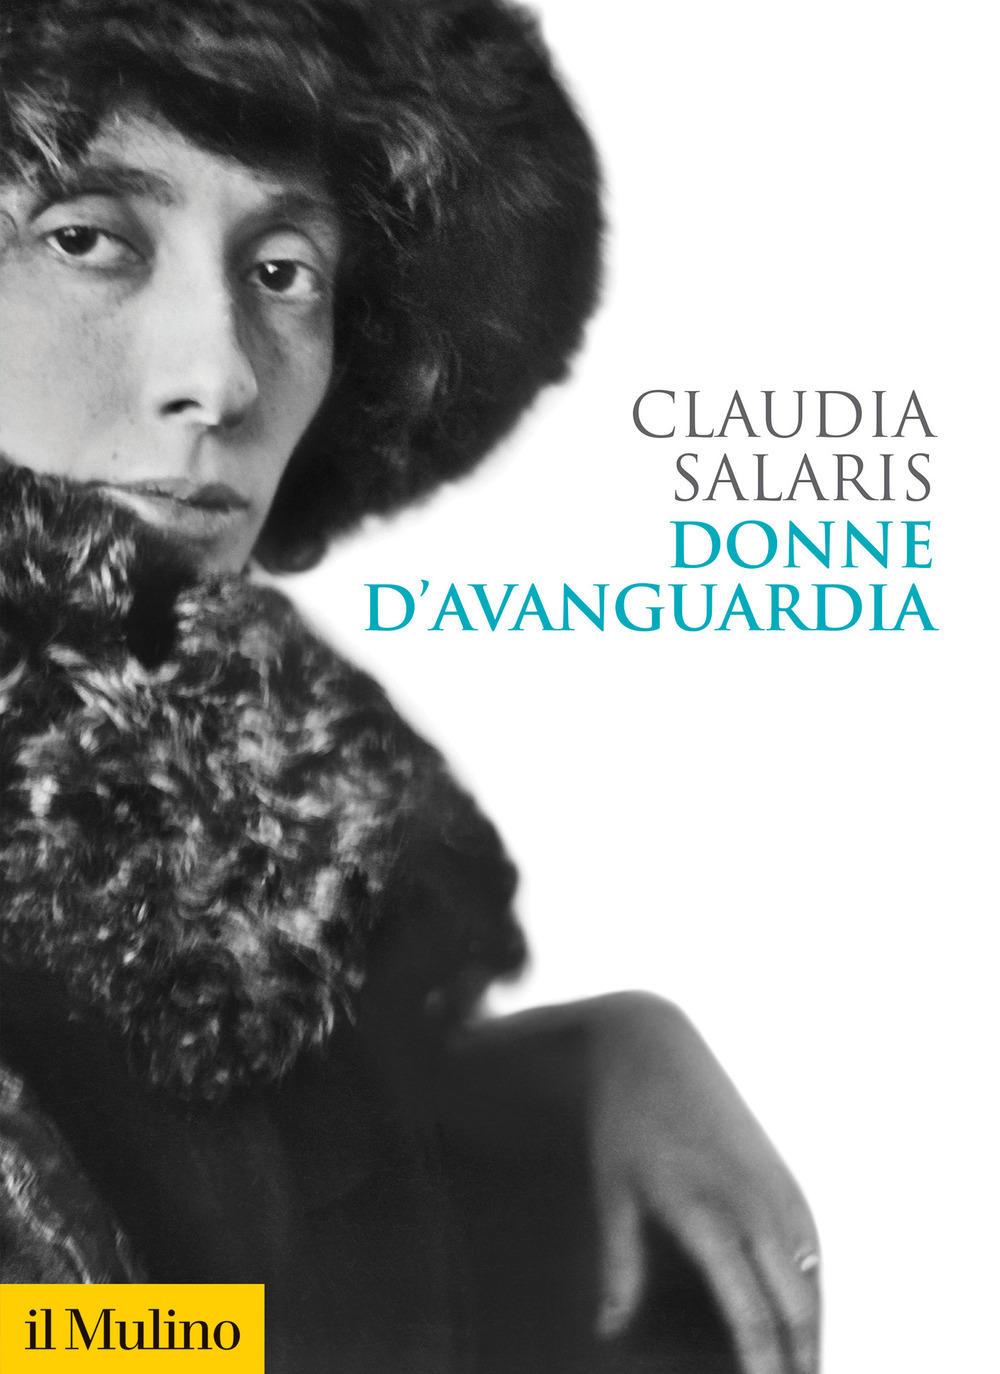 Libri Claudia Salaris - Donne D'avanguardia NUOVO SIGILLATO, EDIZIONE DEL 06/05/2021 SUBITO DISPONIBILE